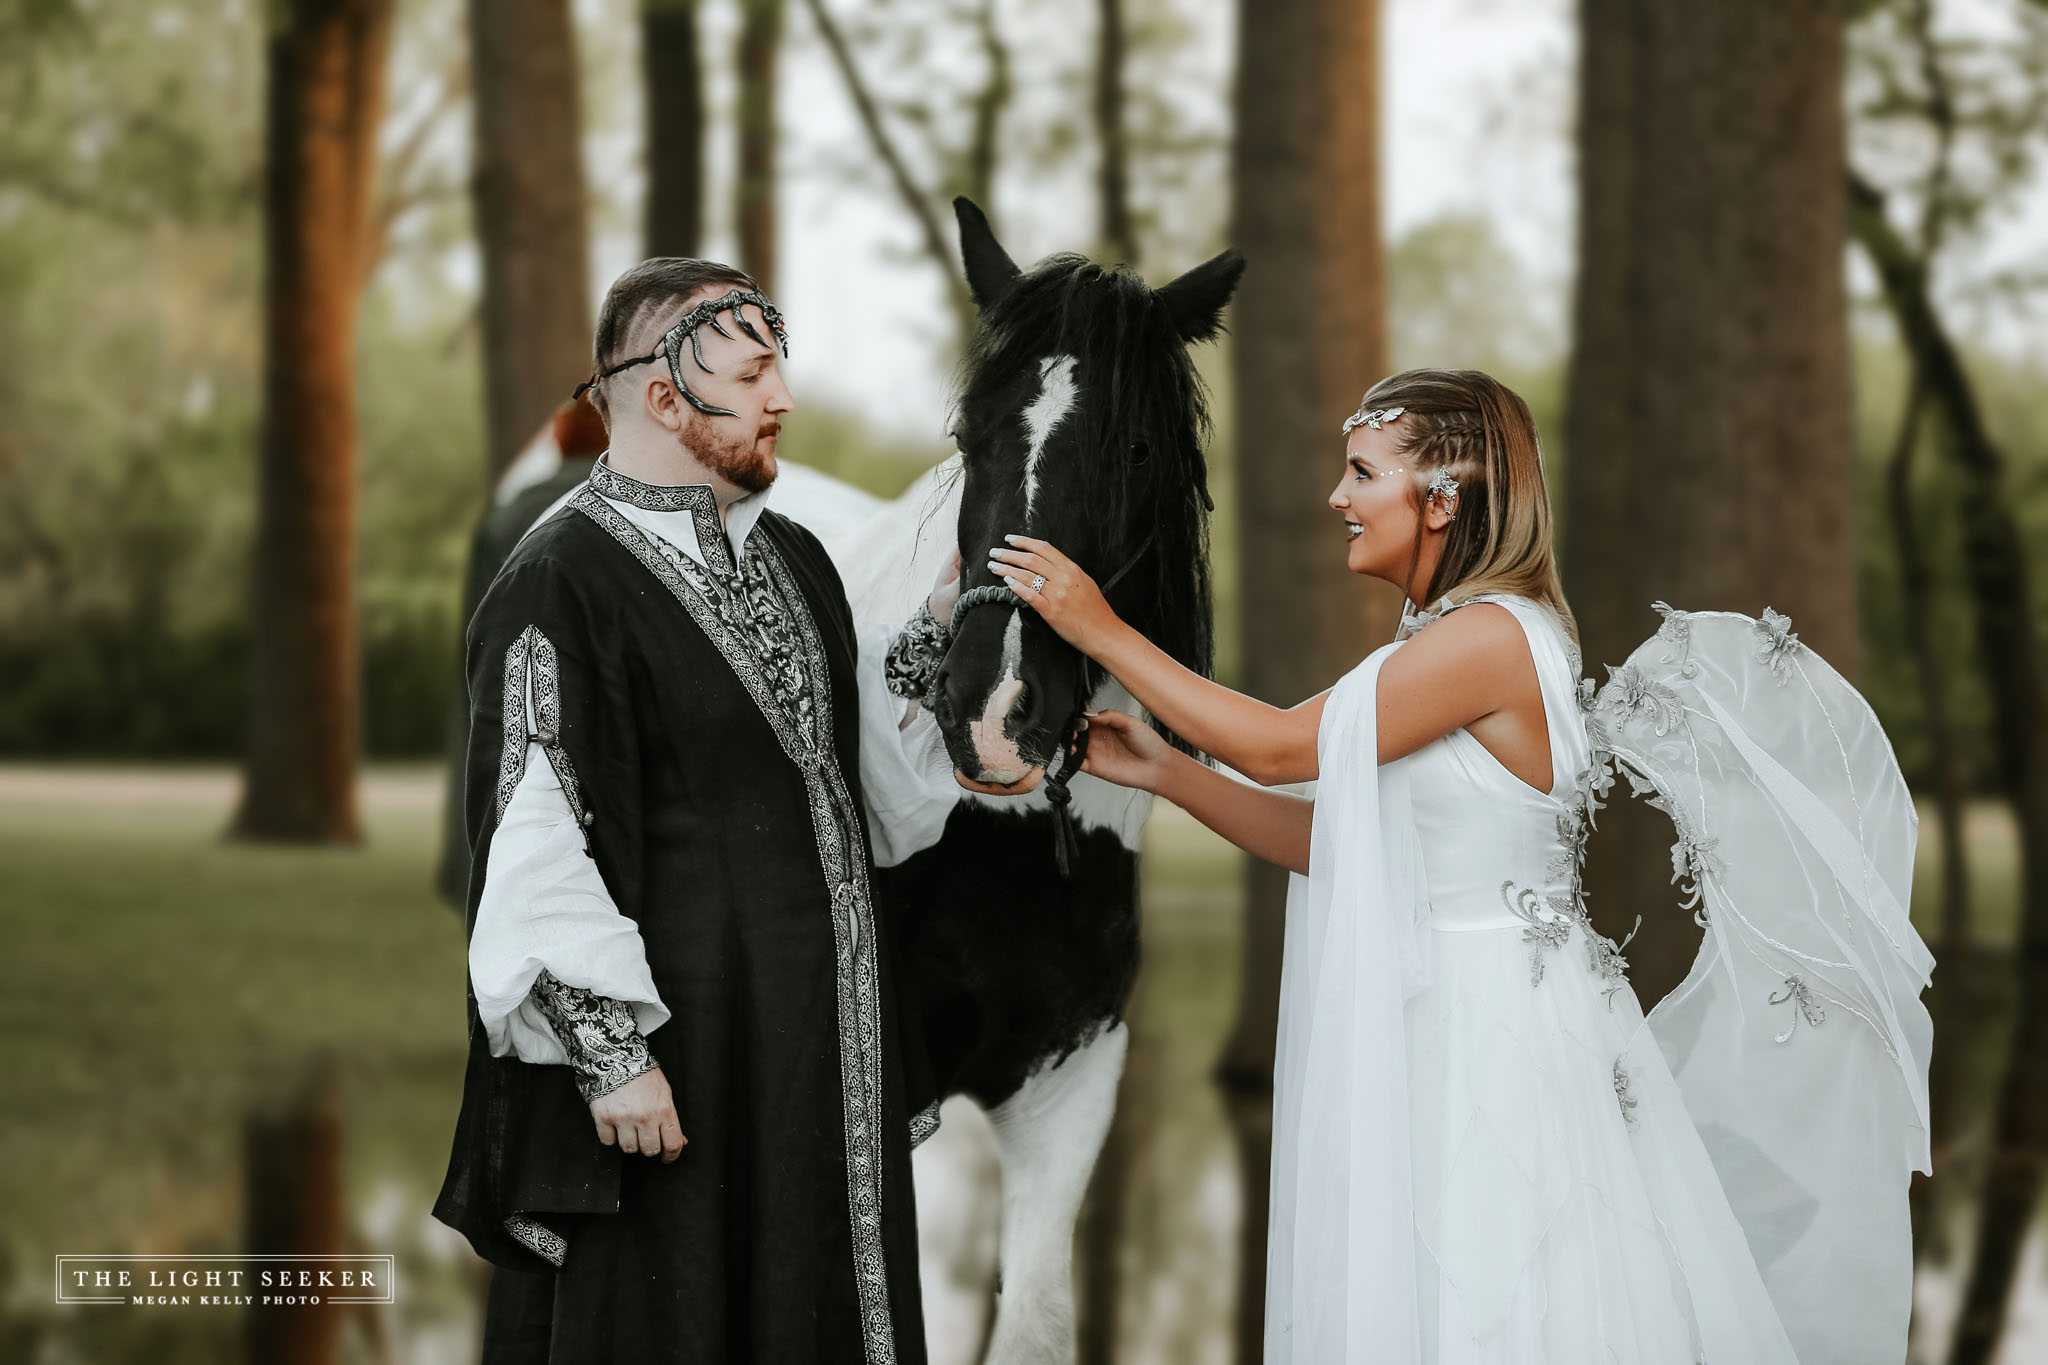 fantasy wedding theme